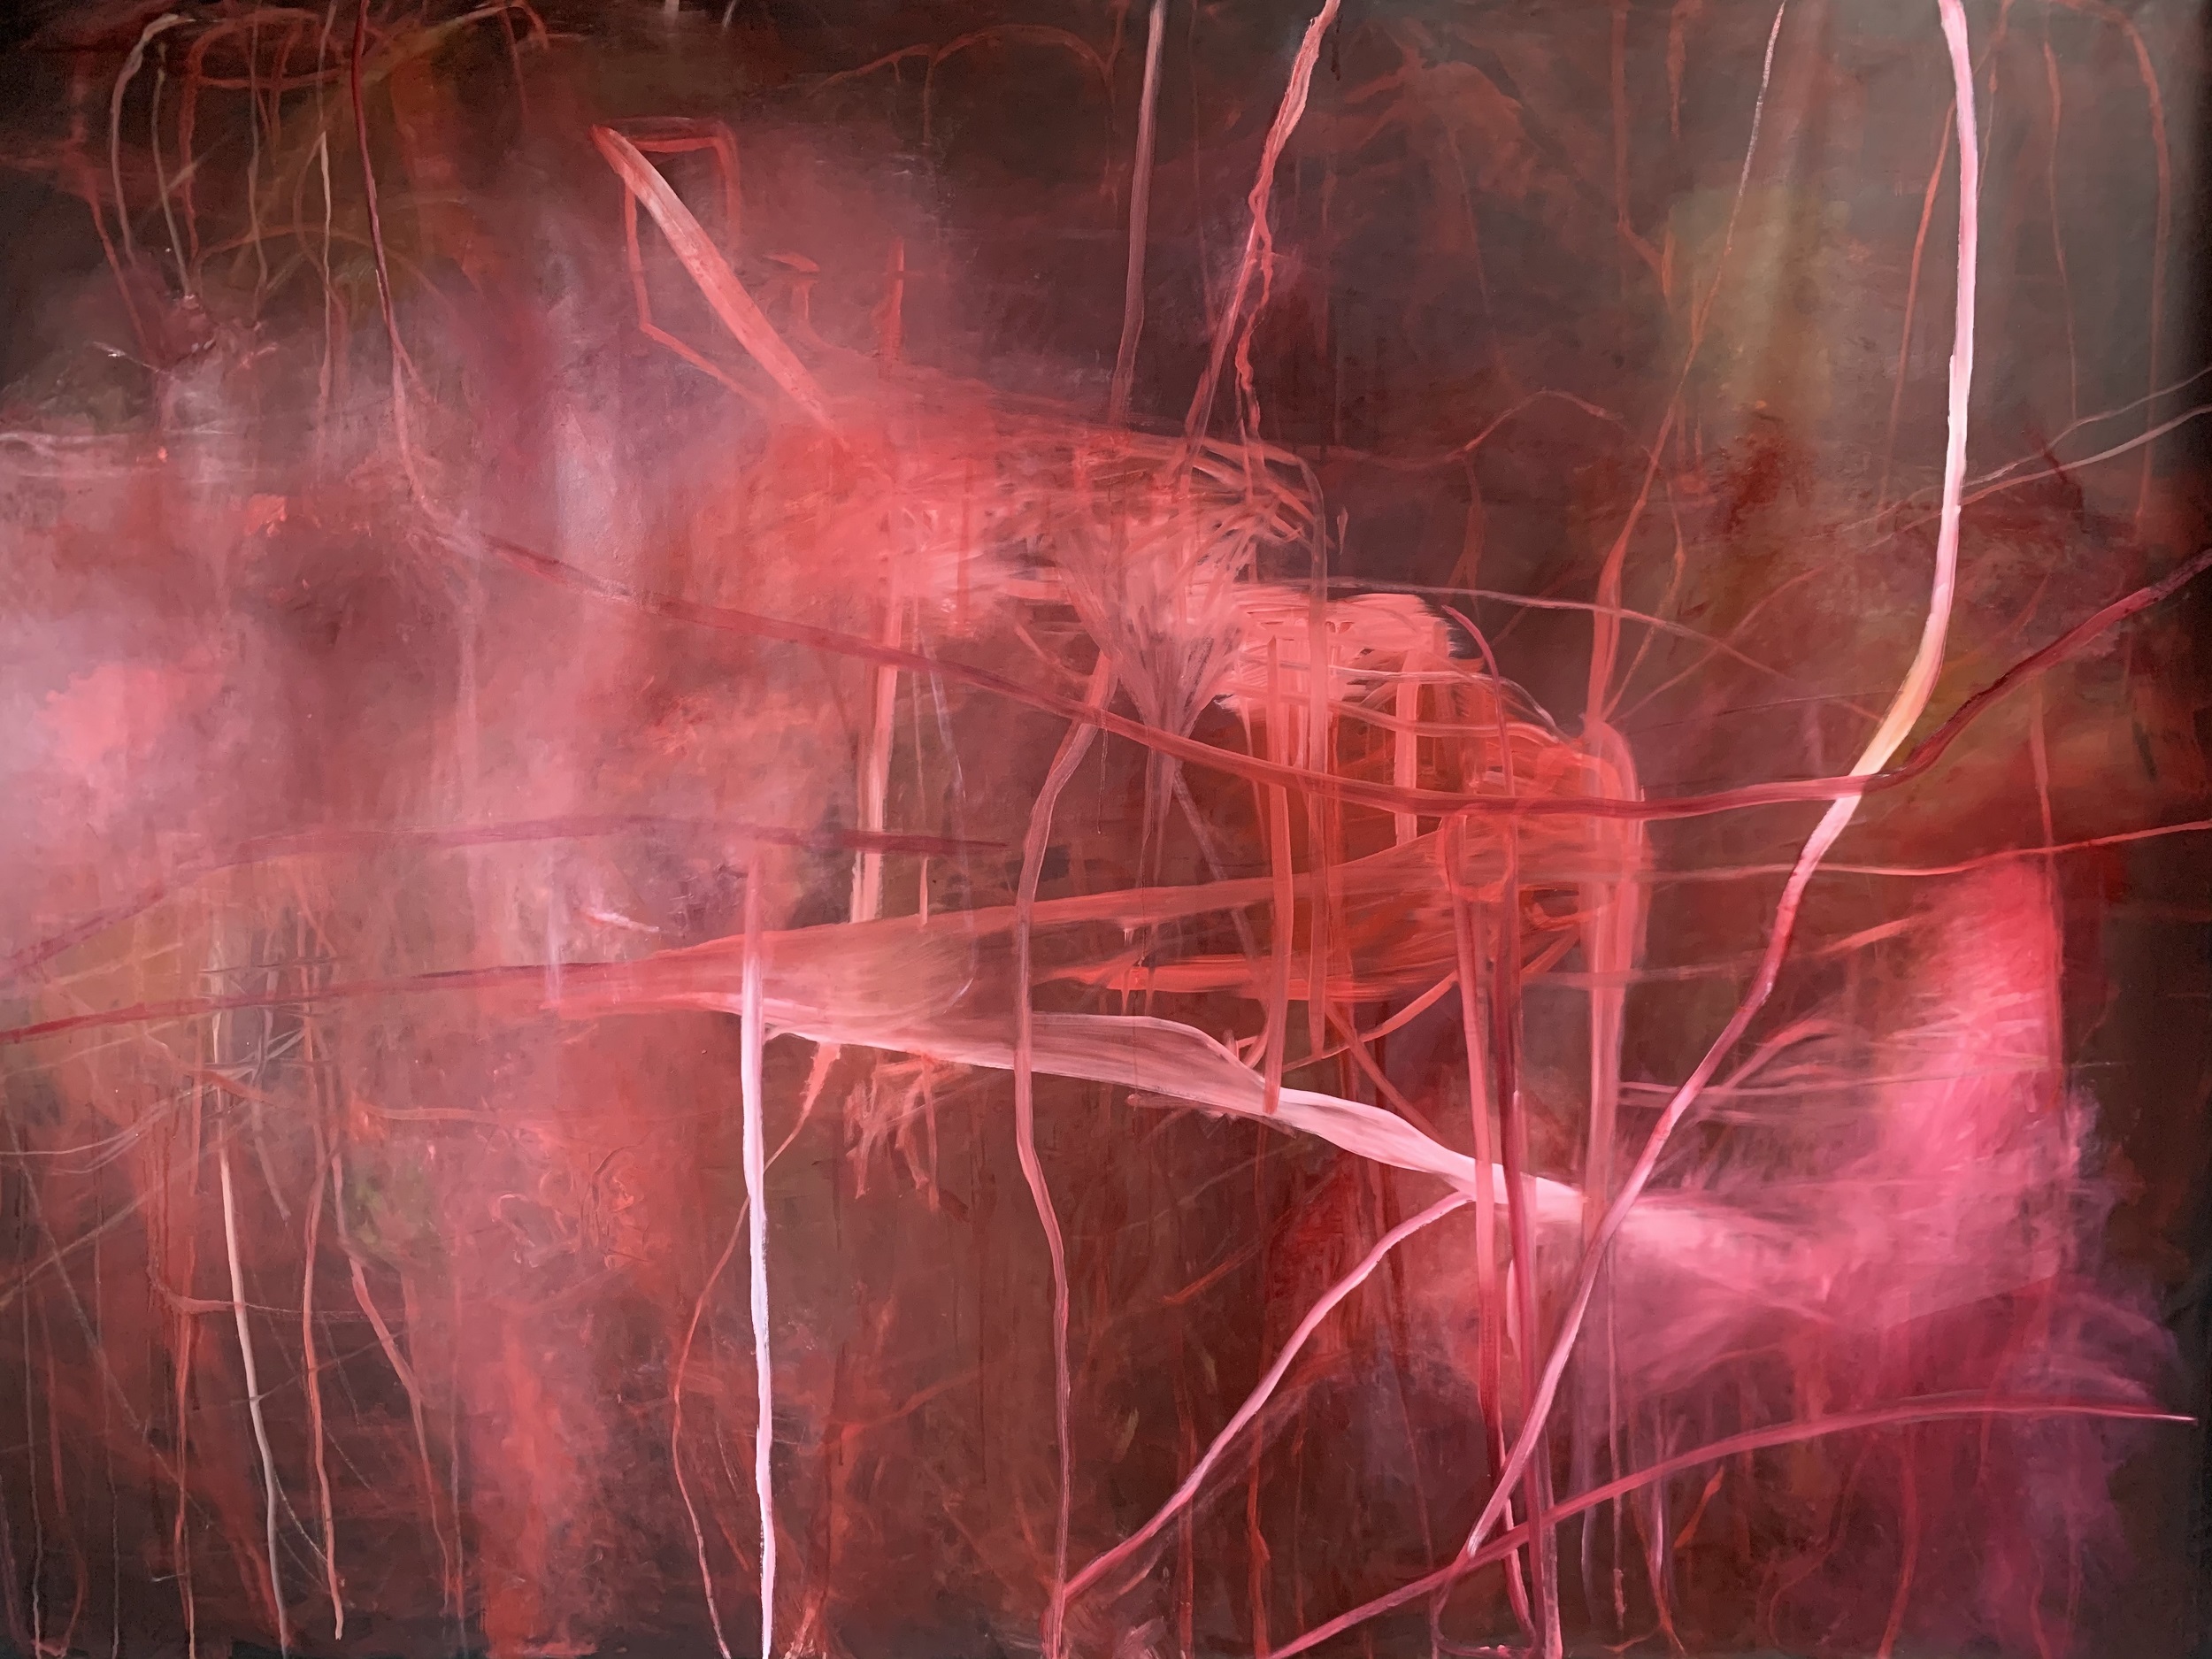 La vie en rose (2021), 65 x 85 in, oil on canvas